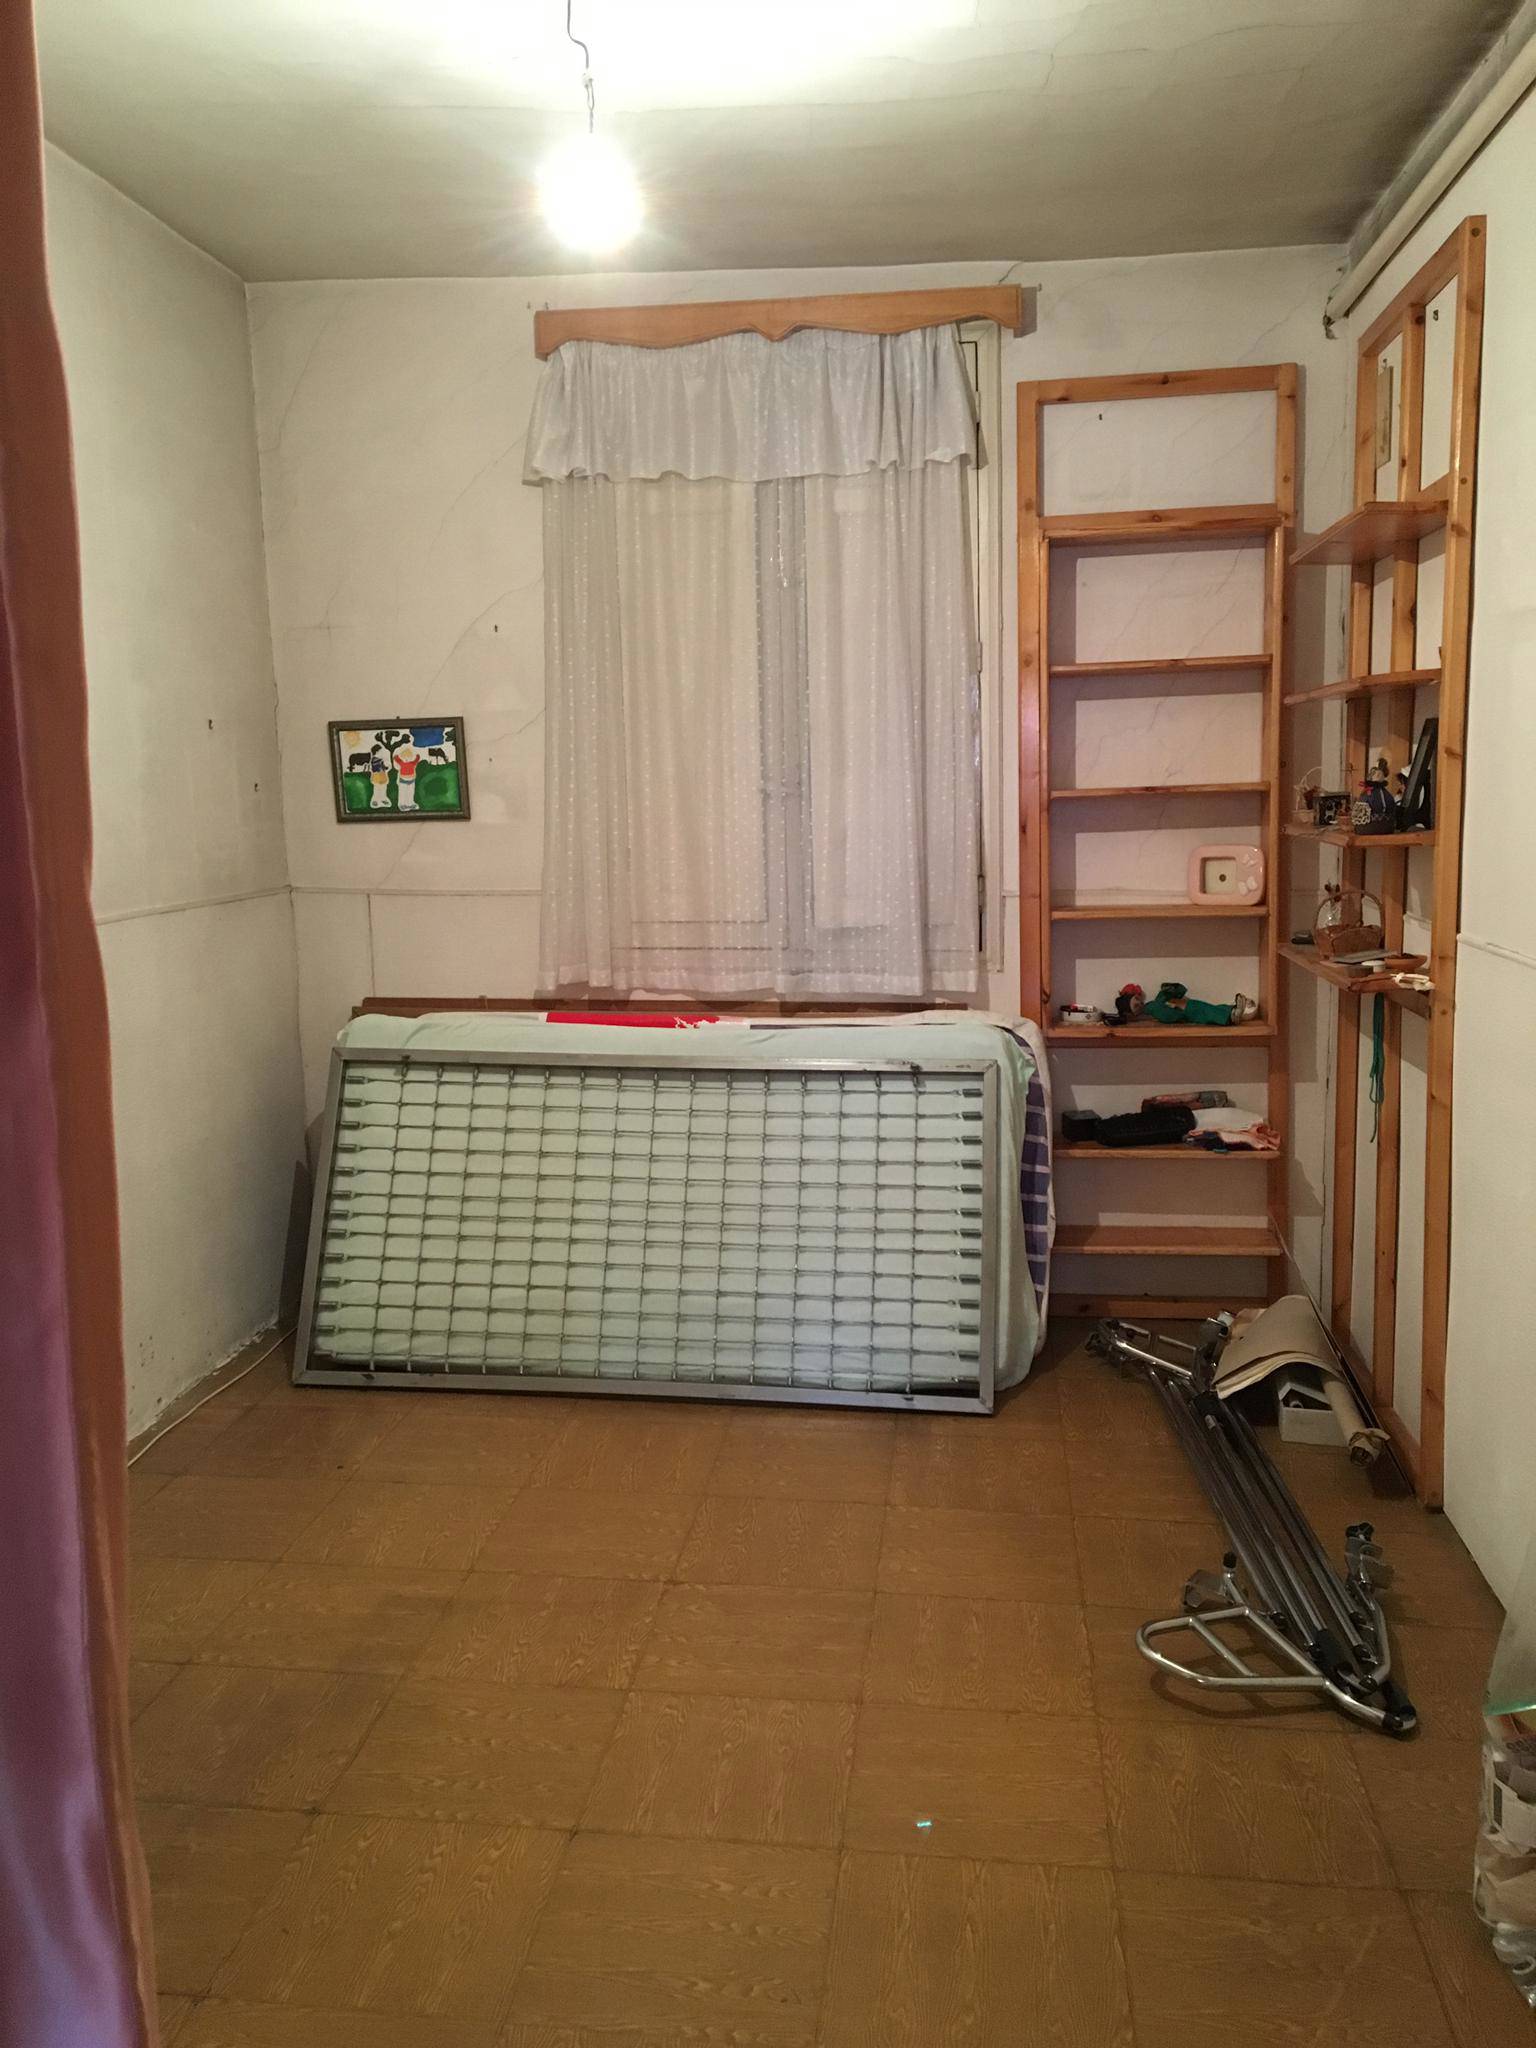 Dormitorio infantil antes de la reforma.